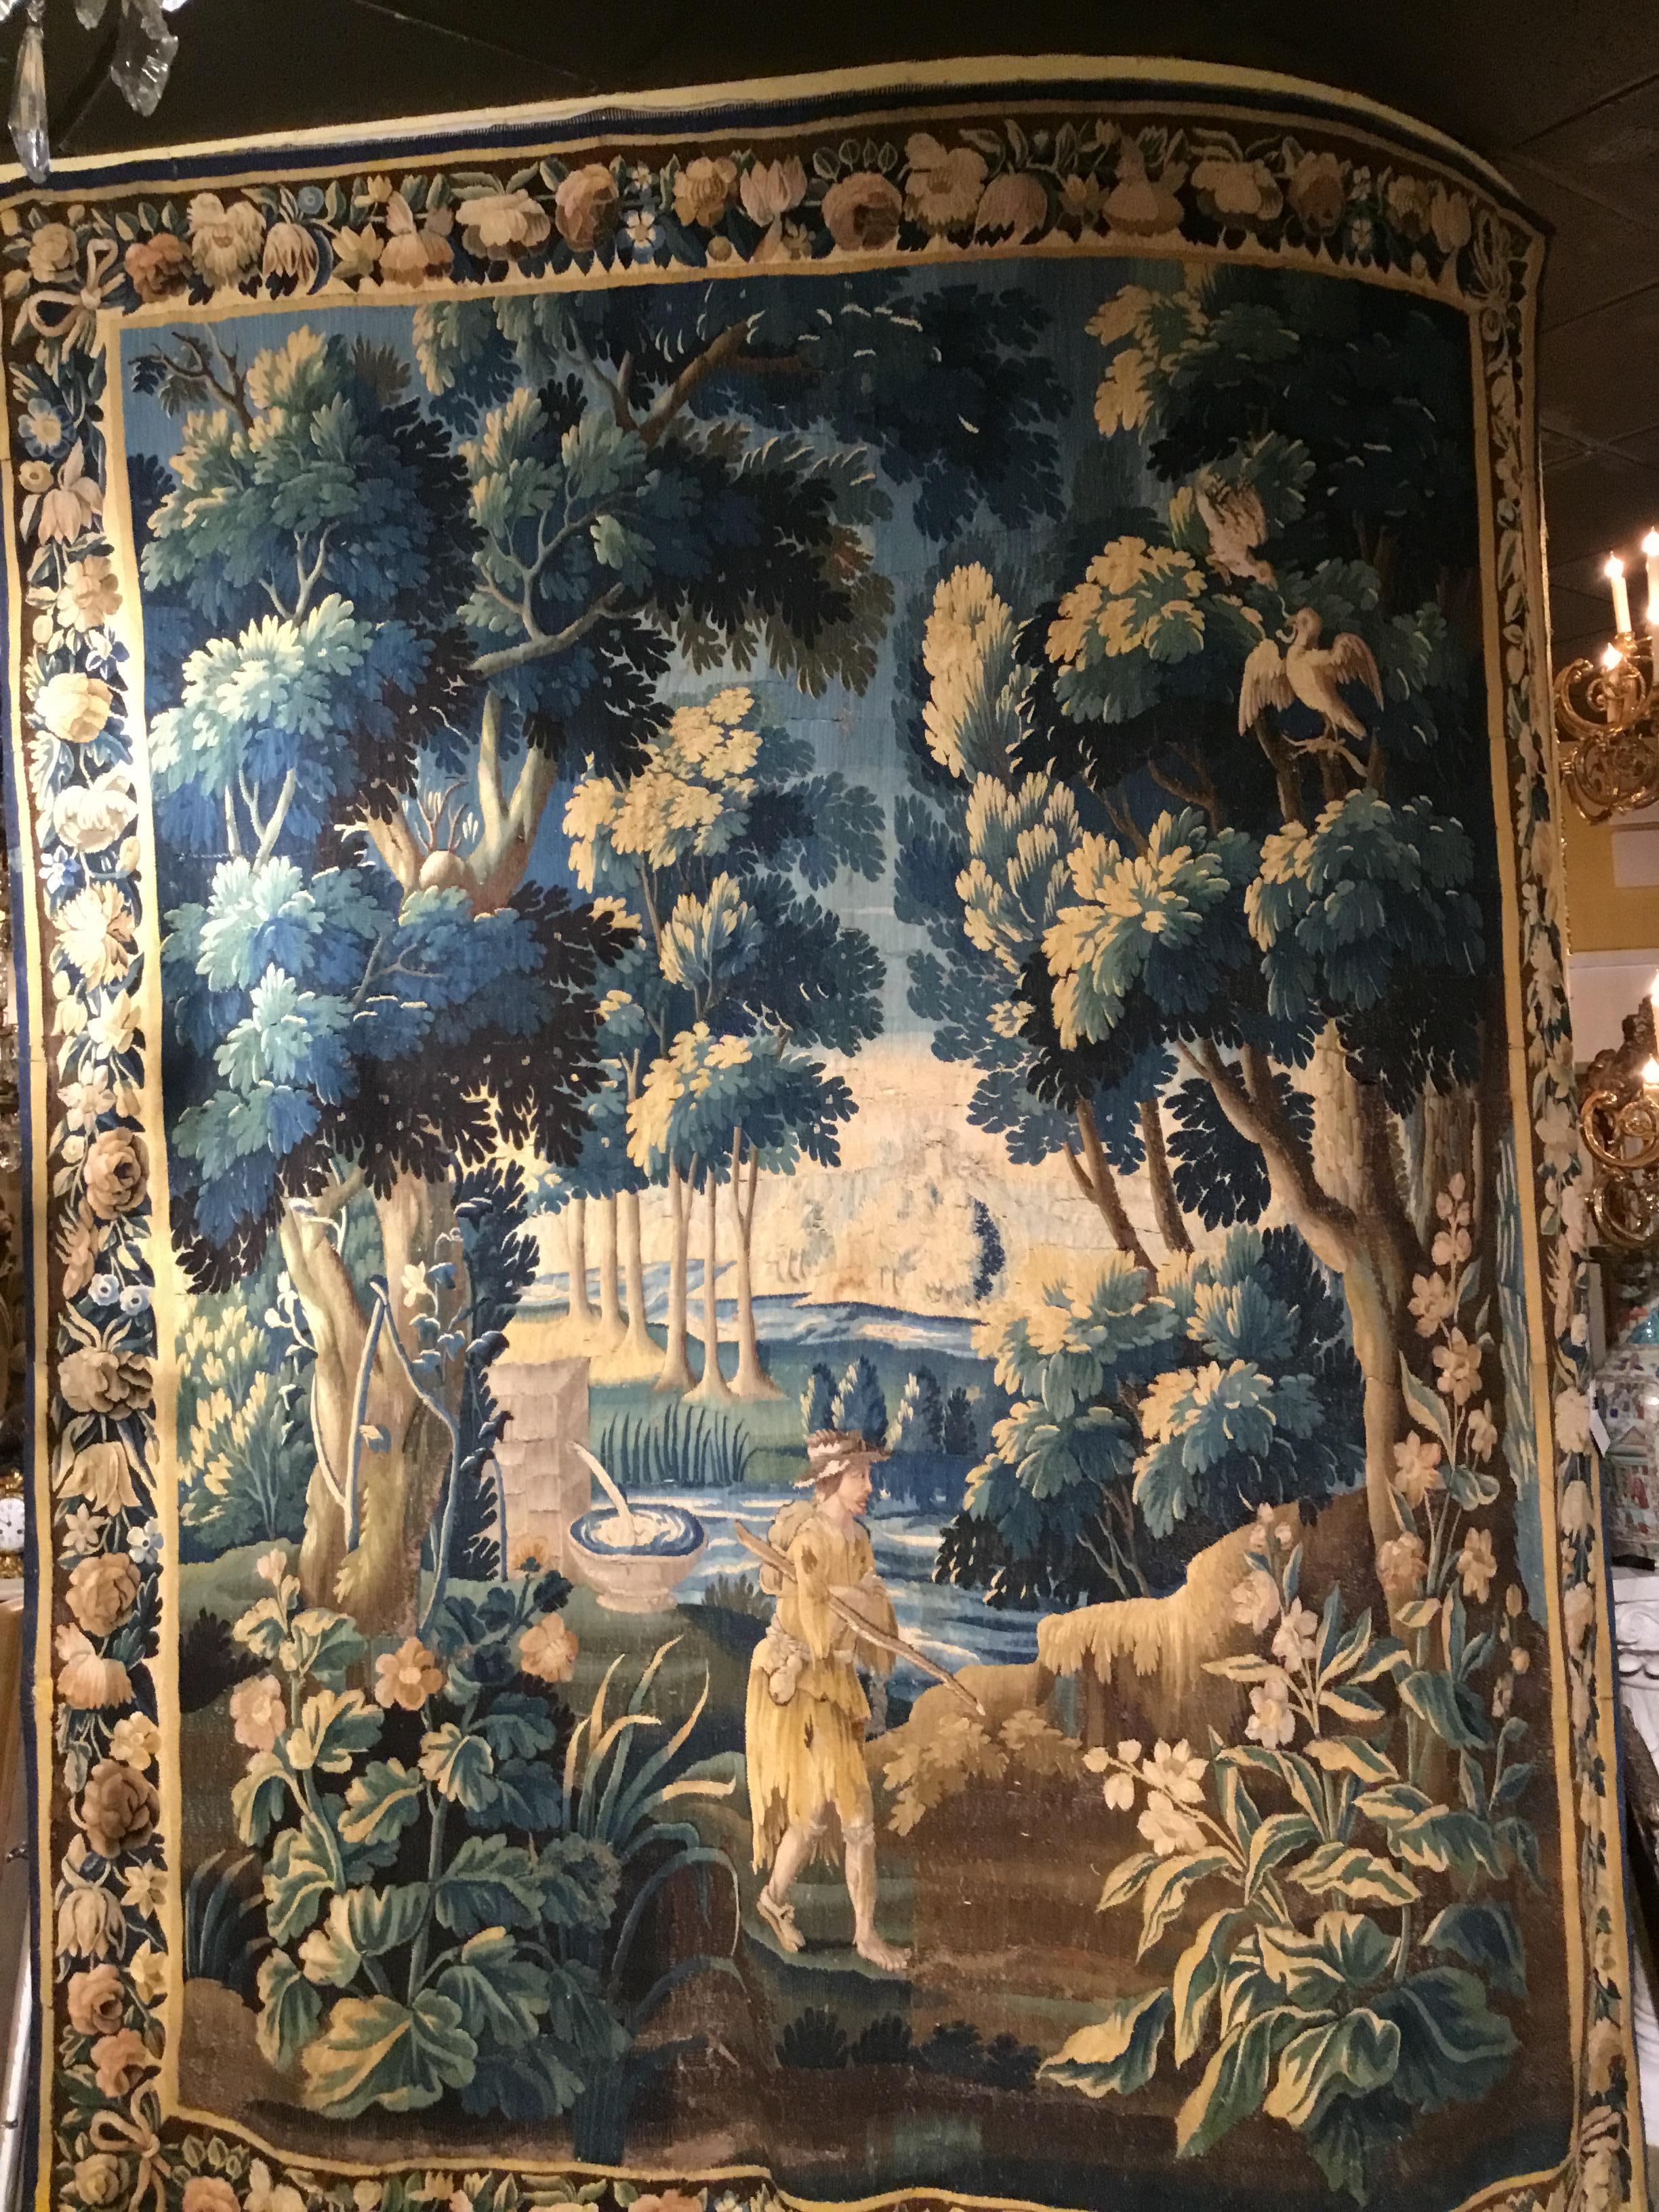 Les teintes vertes, dorées, brunes et fauves sont utilisées dans cette grande tapisserie. Forêt dans de jolies nuances de
Verts et bleus avec des oiseaux dans le coin supérieur droit et un randonneur avec une fontaine
Dans la partie inférieure de